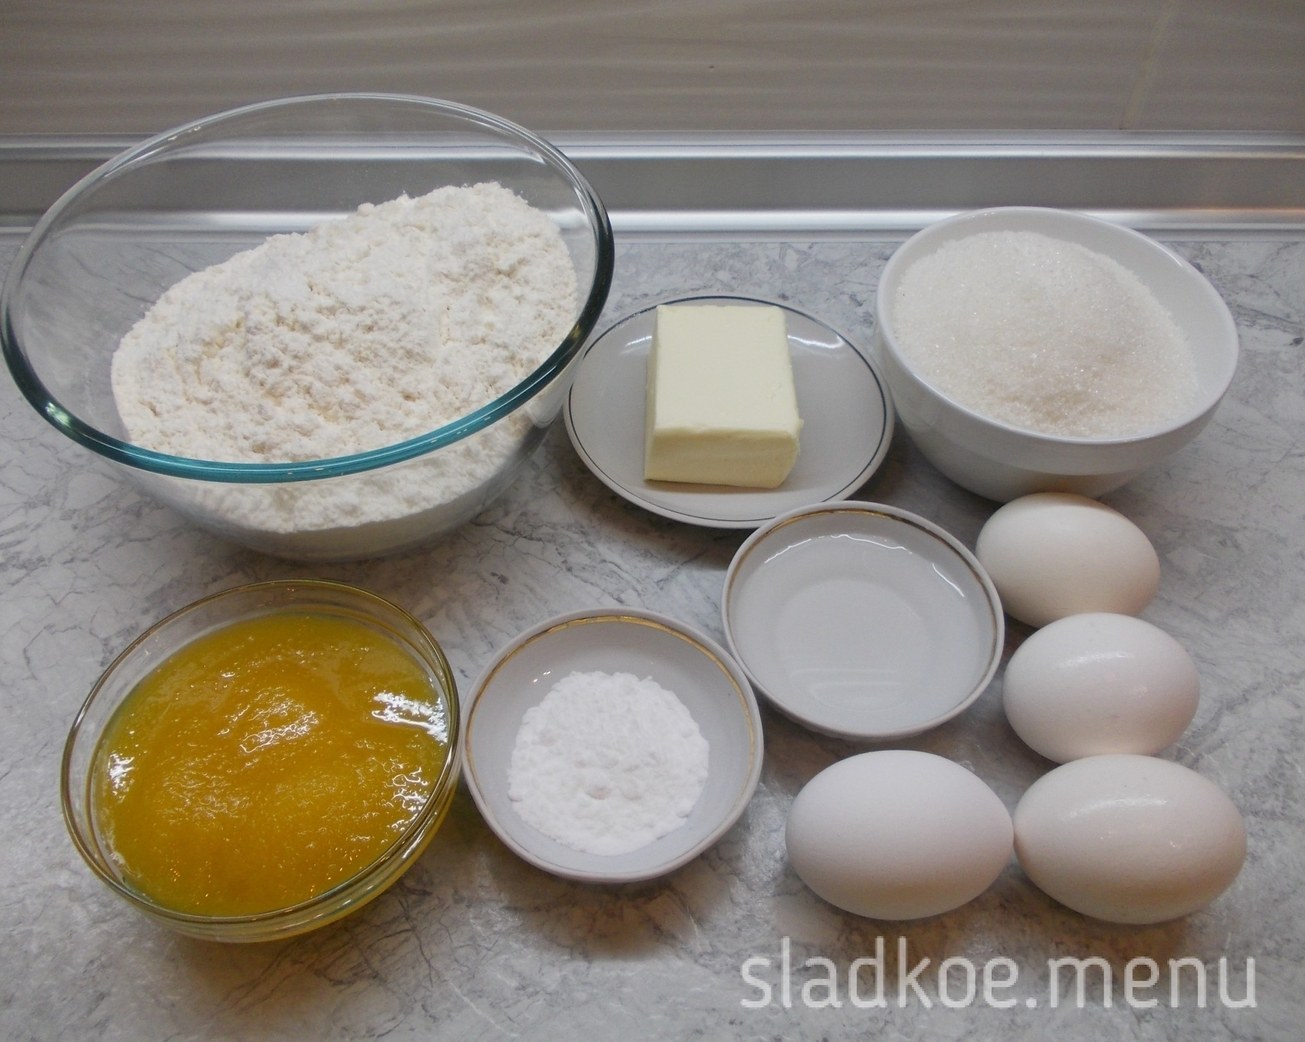 Яйцо 3 столовые ложки сахара. Ингредиенты для теста. Мука яйца сахар. Ингредиенты для торта. Яйца масло мука сахар.